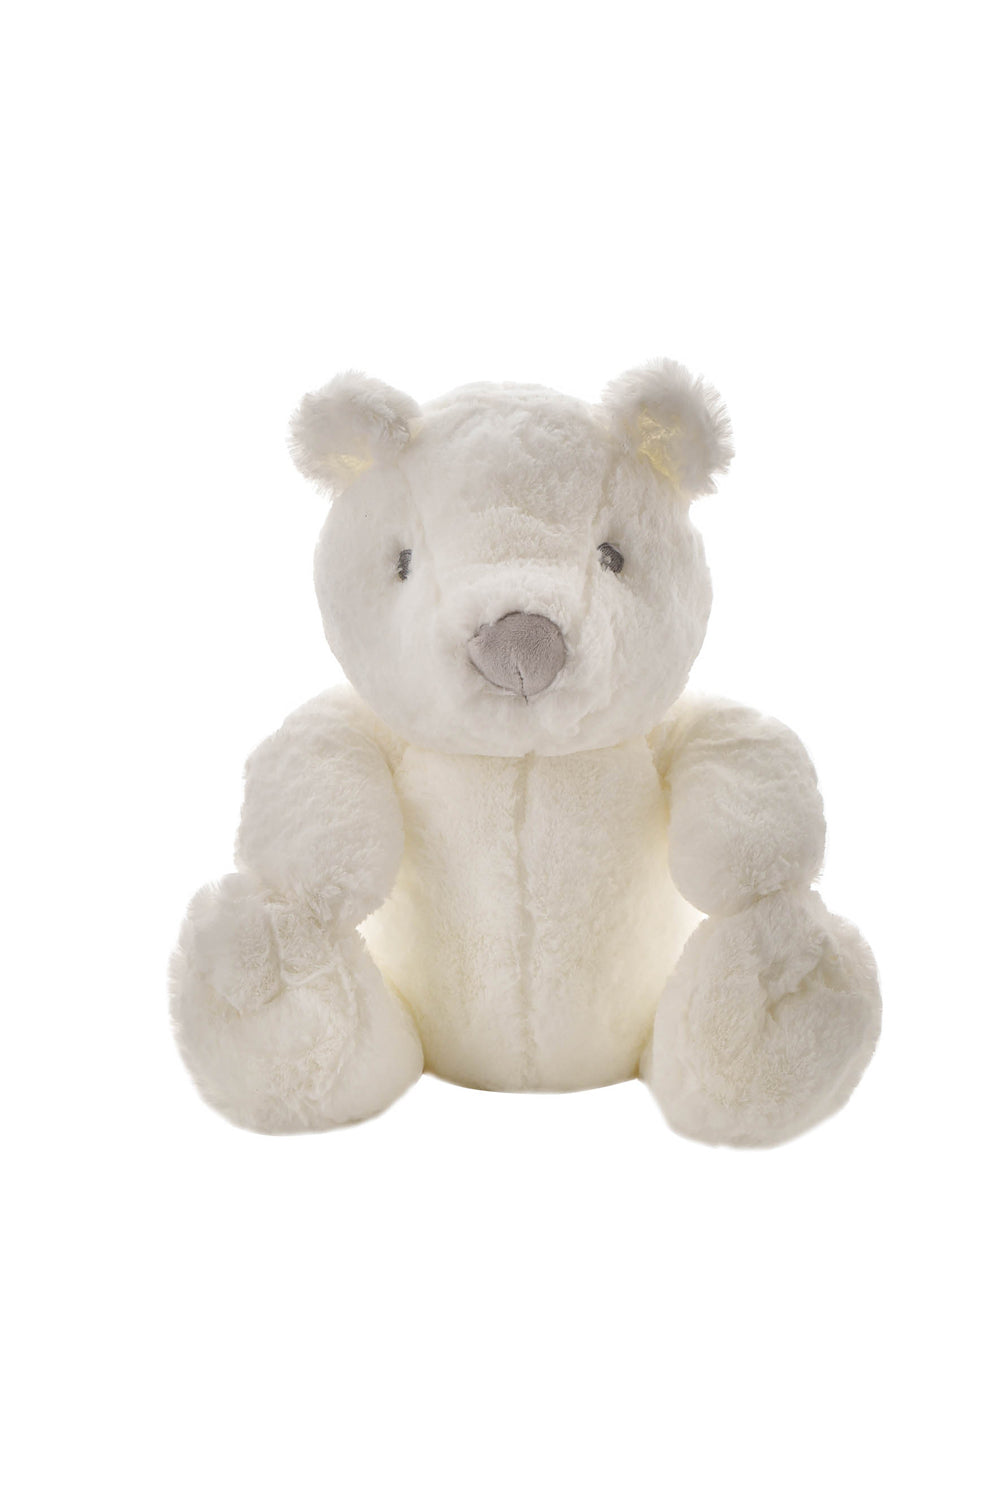 Bambino Bambino White Plush Bear Large 31cm 1 Shaws Department Stores